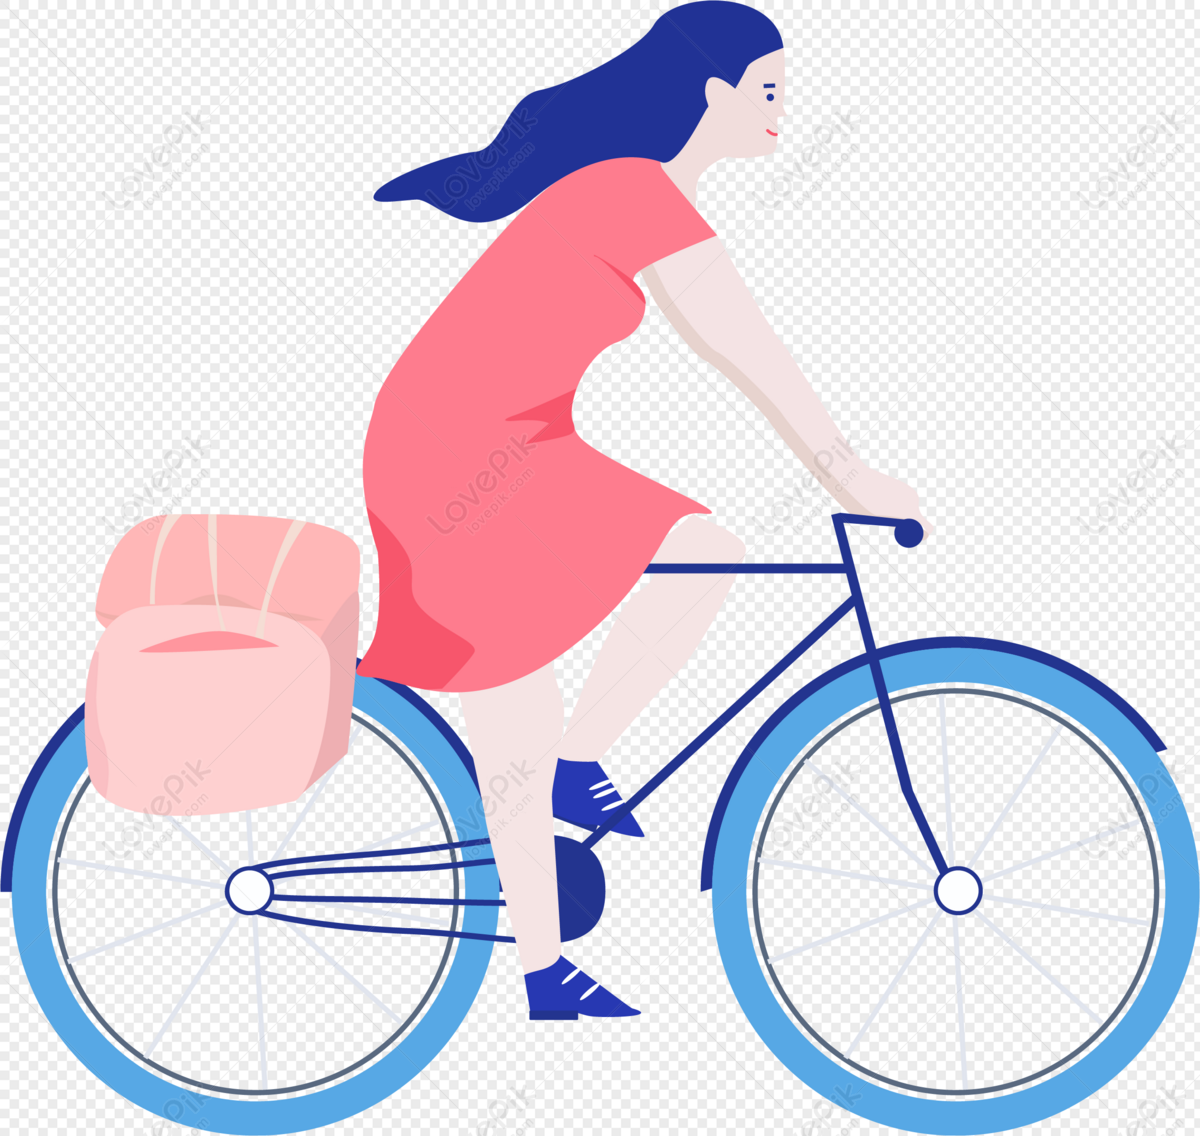 Xem ngay hình ảnh của cô nàng xinh đẹp cùng chiếc xe đạp đầy phóng khoáng và năng động. Một cách thể hiện sự tự do và yêu cuộc sống đích thực!